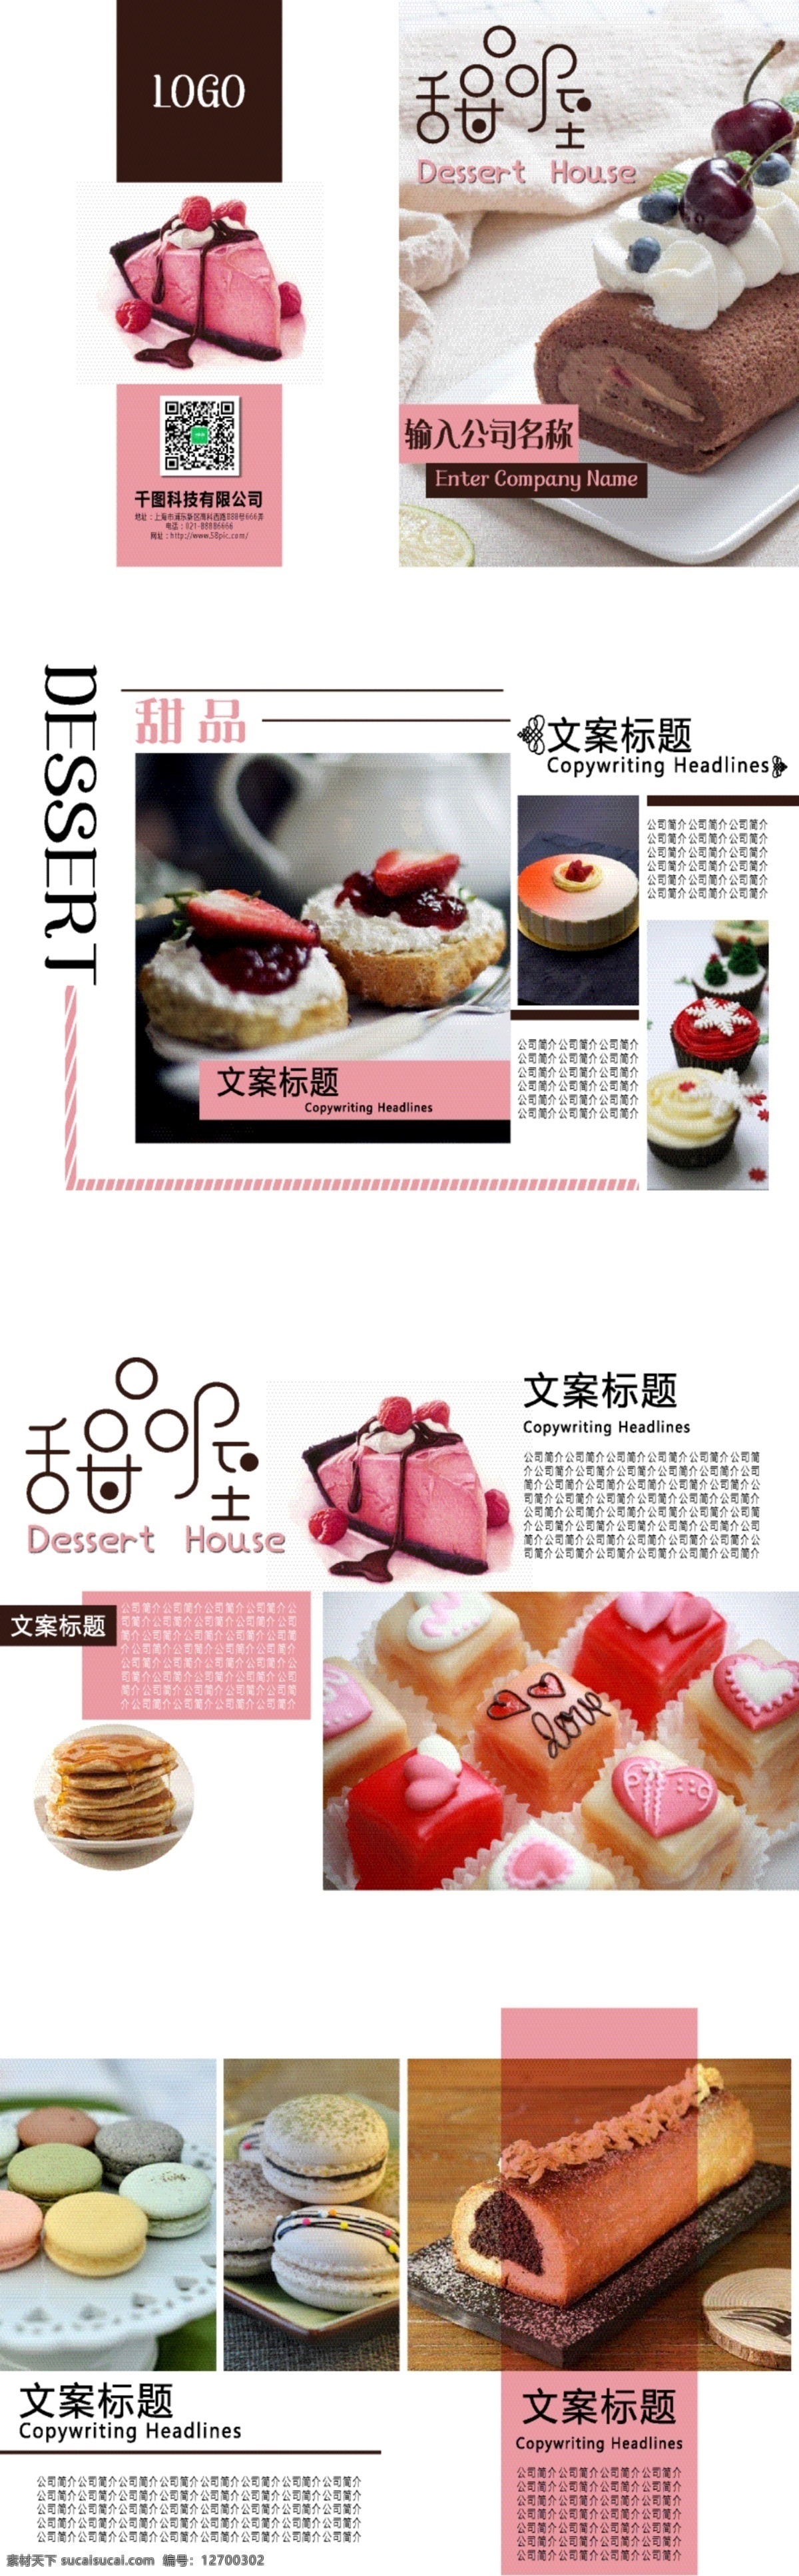 小 清新 粉色 甜品 宣传画册 甜品画册 可爱 甜品宣传册 小清新